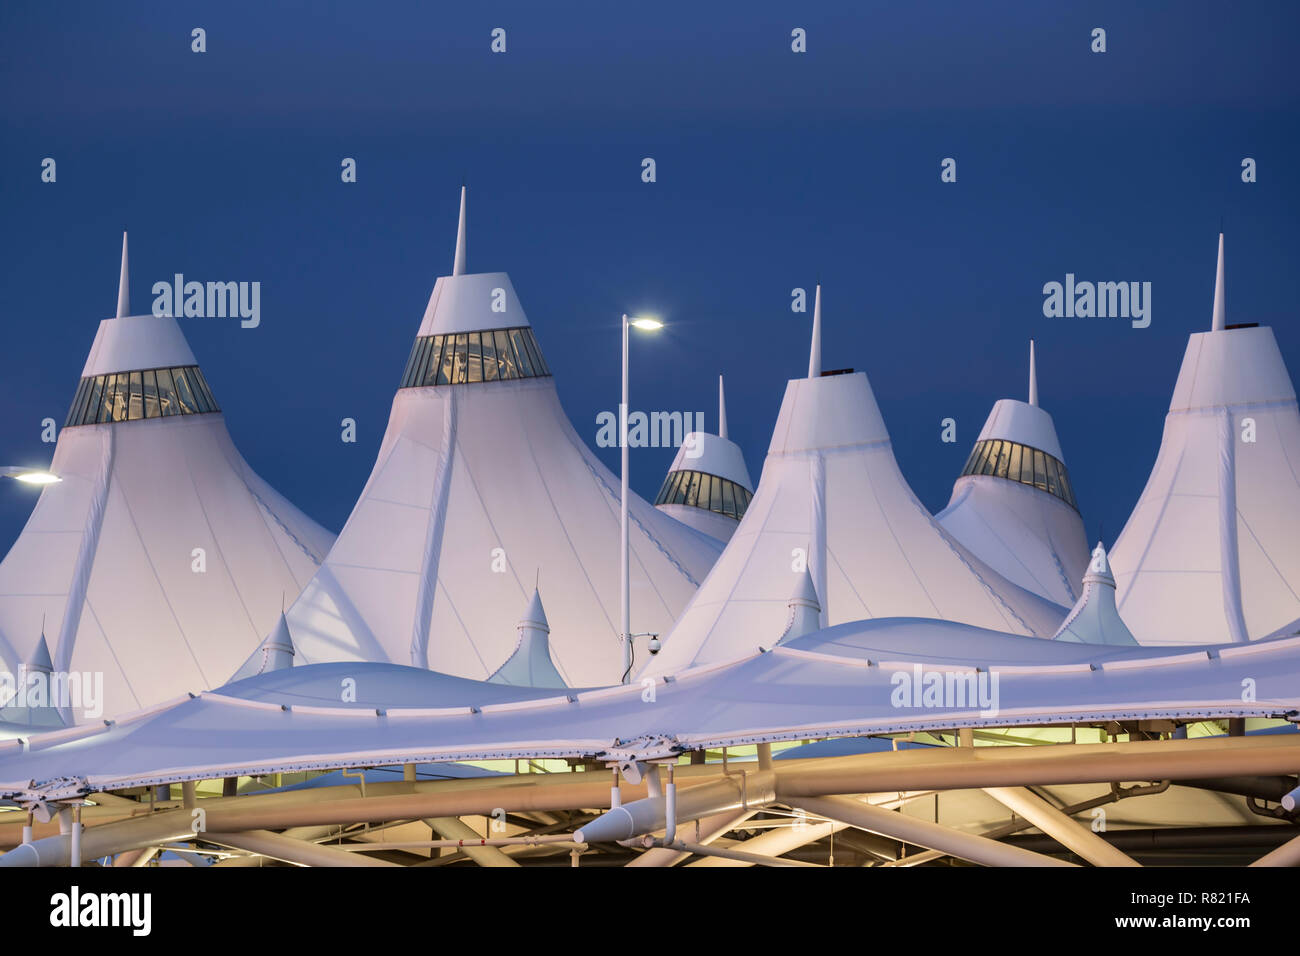 'Tente' toit en fibre de verre (conçu par Fentress Bradburn Architects), Jeppesen aérogare, l'Aéroport International de Denver (DIA), Denver, Colorado-NOUS Banque D'Images